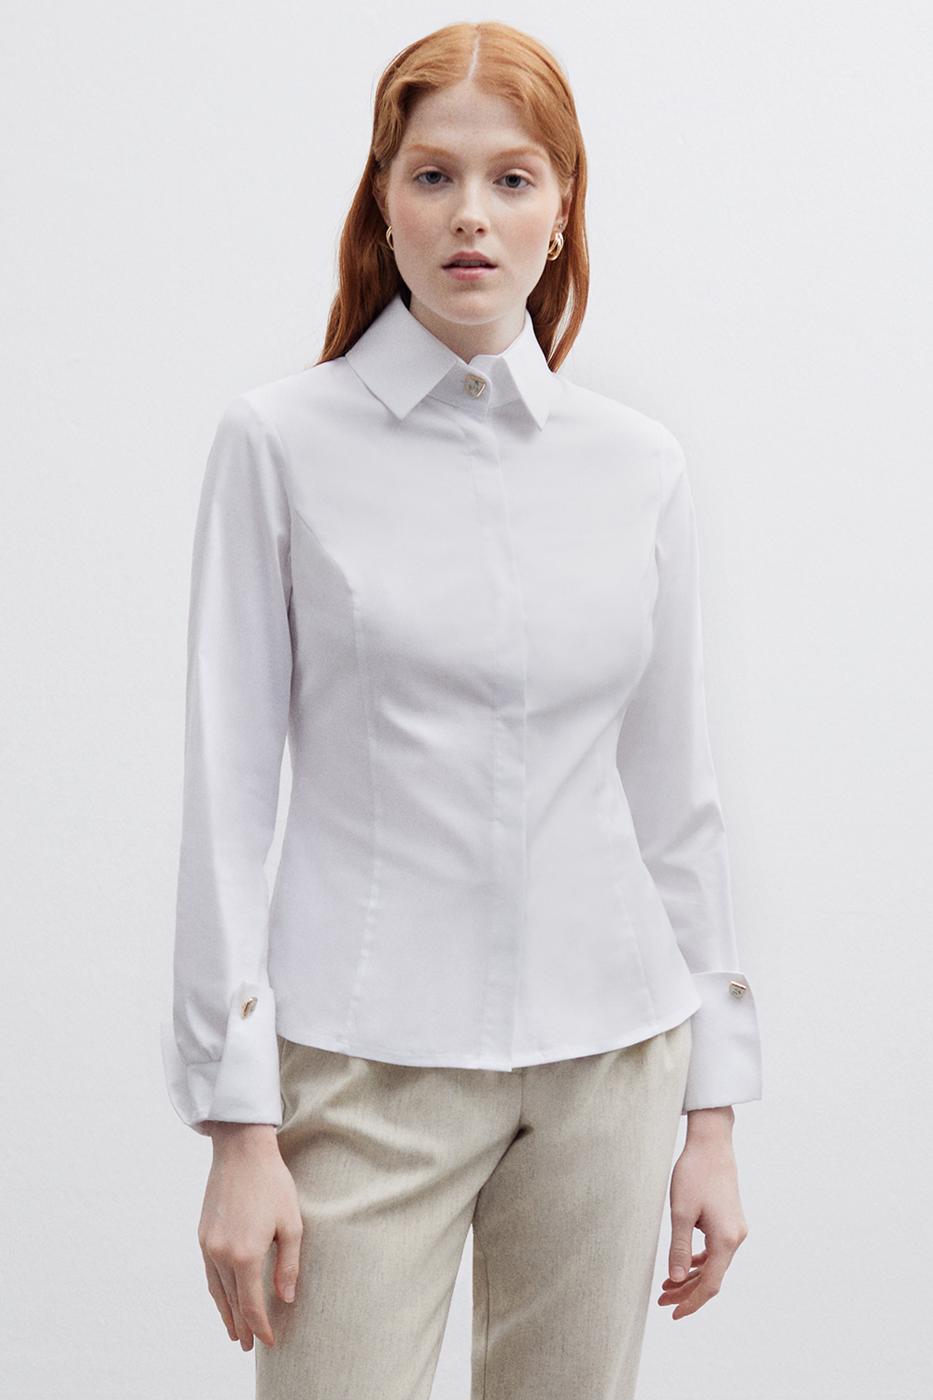 Bayan BEYAZ Ann Slim Fit Gömlek Yaka Standart Boy Beyaz Renk Kadın Gömlek